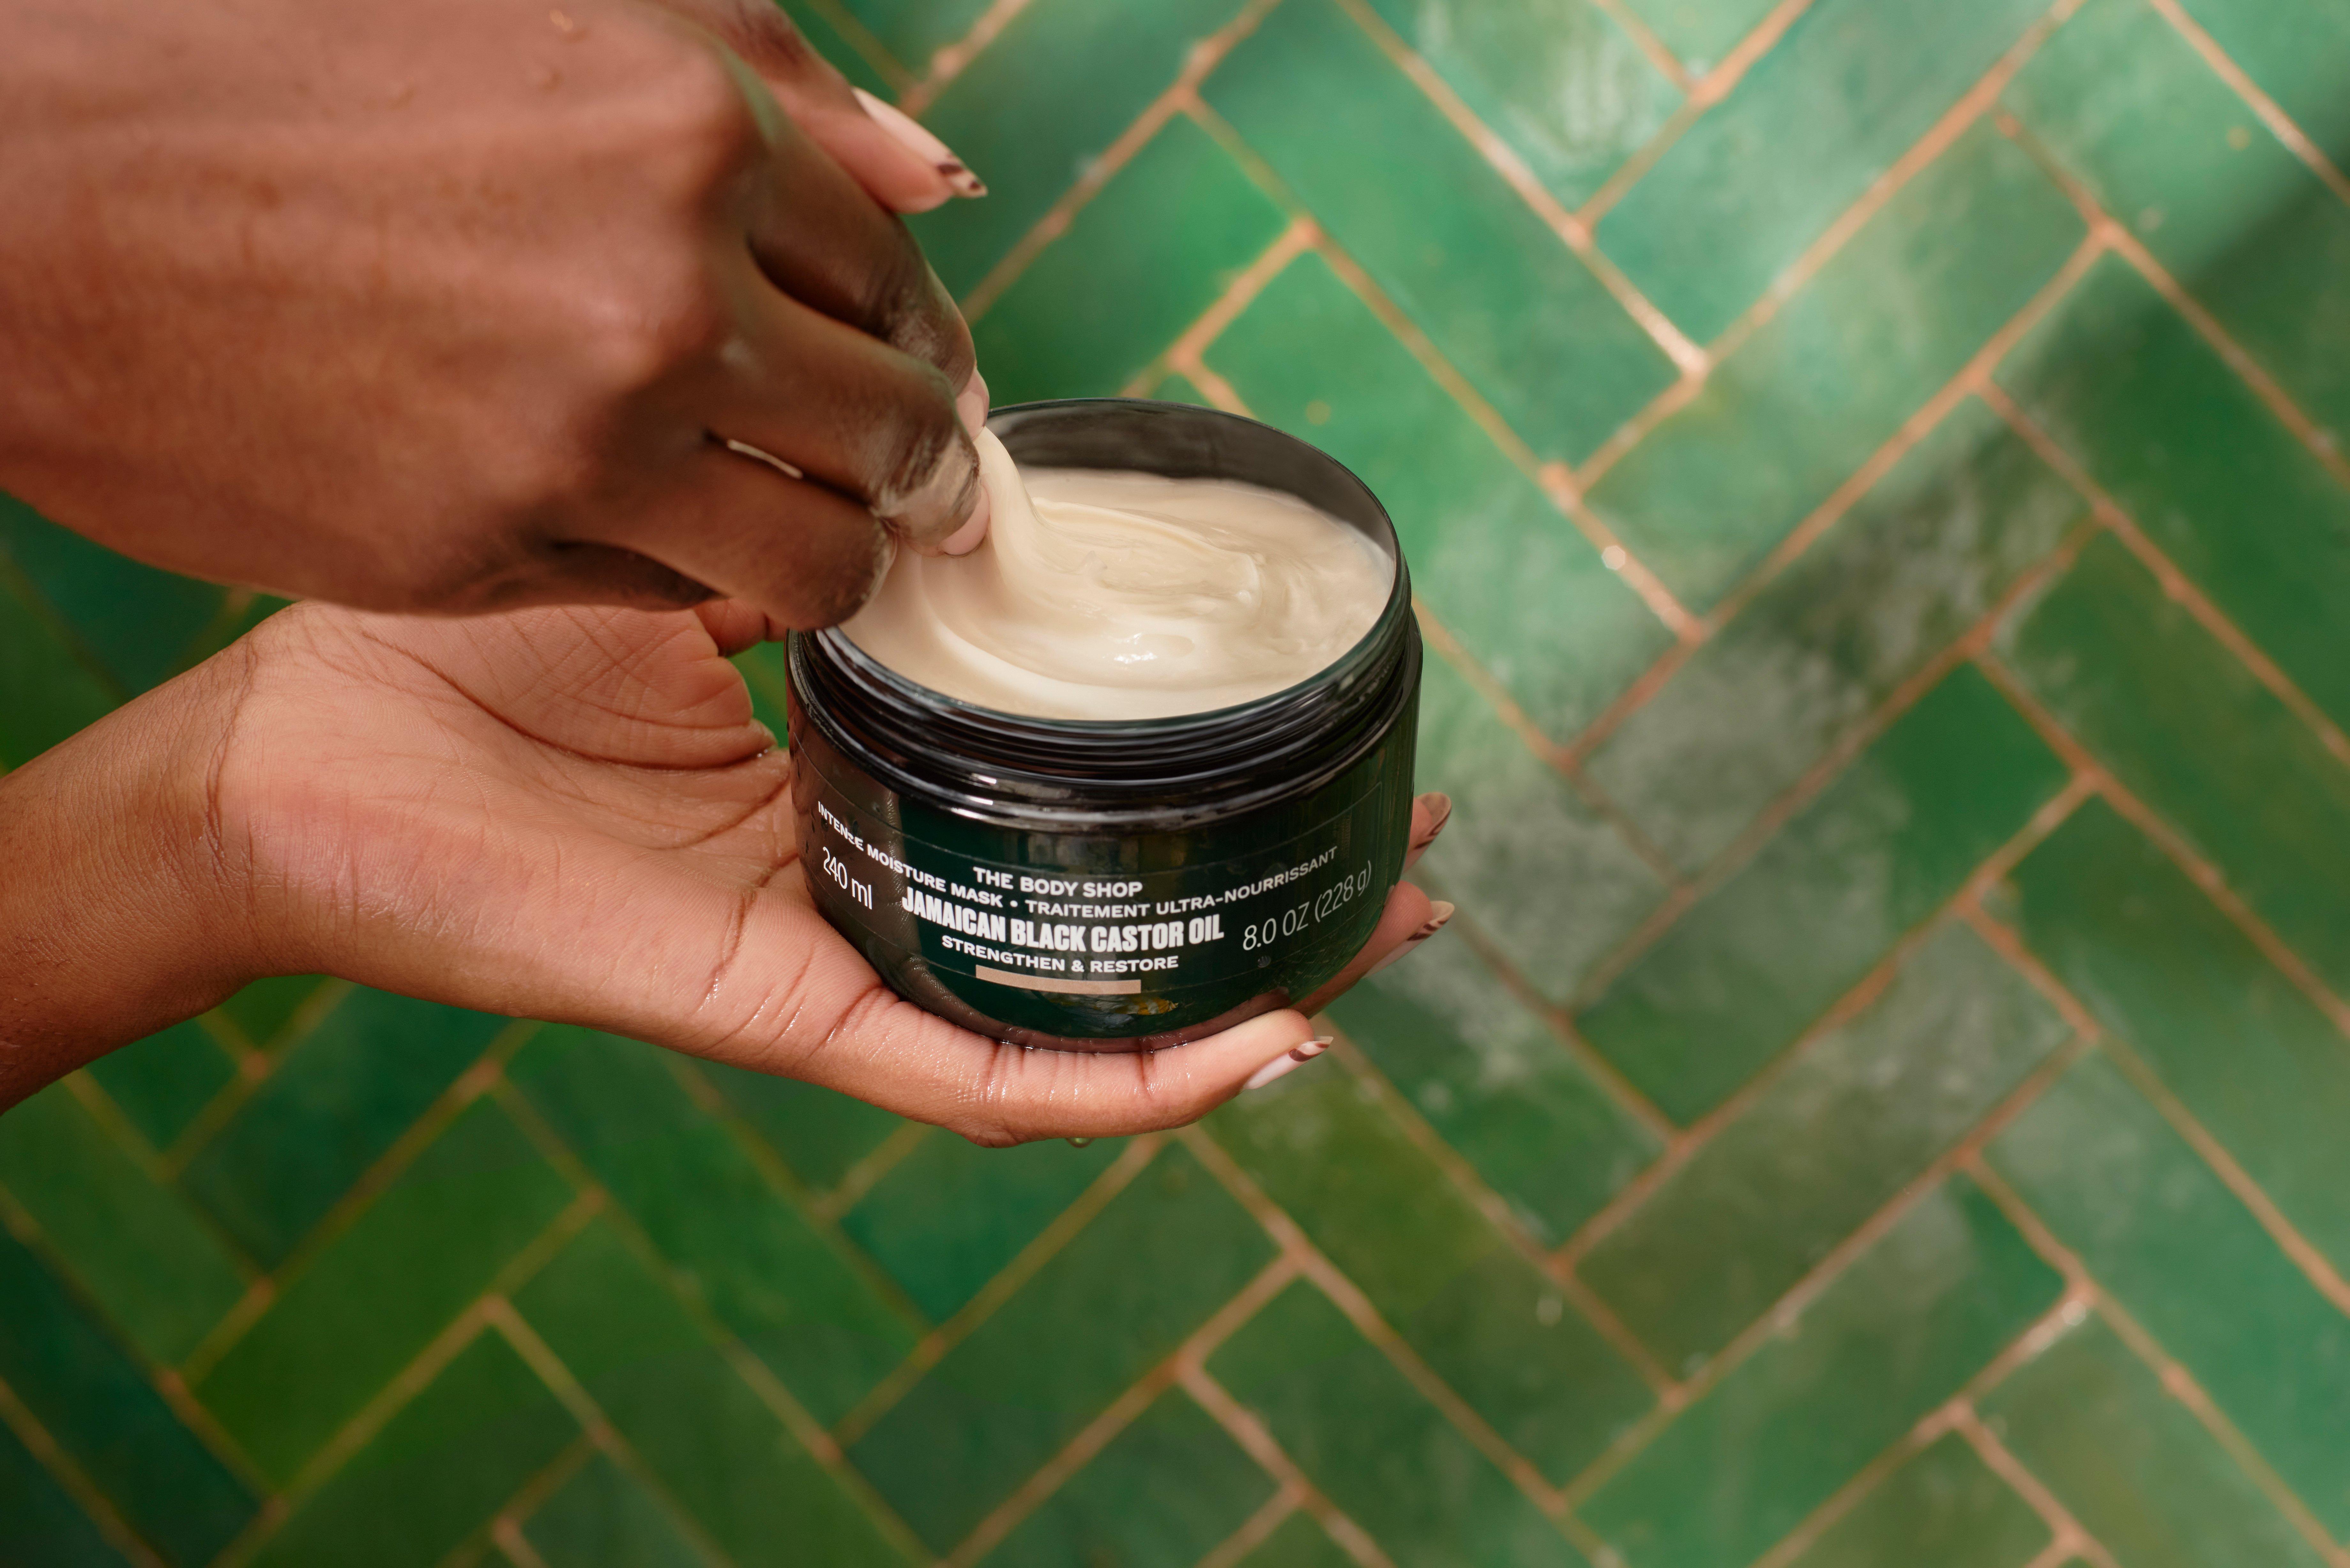 Black Castor Oil Intense Moisture Hair Mask | Body Shop